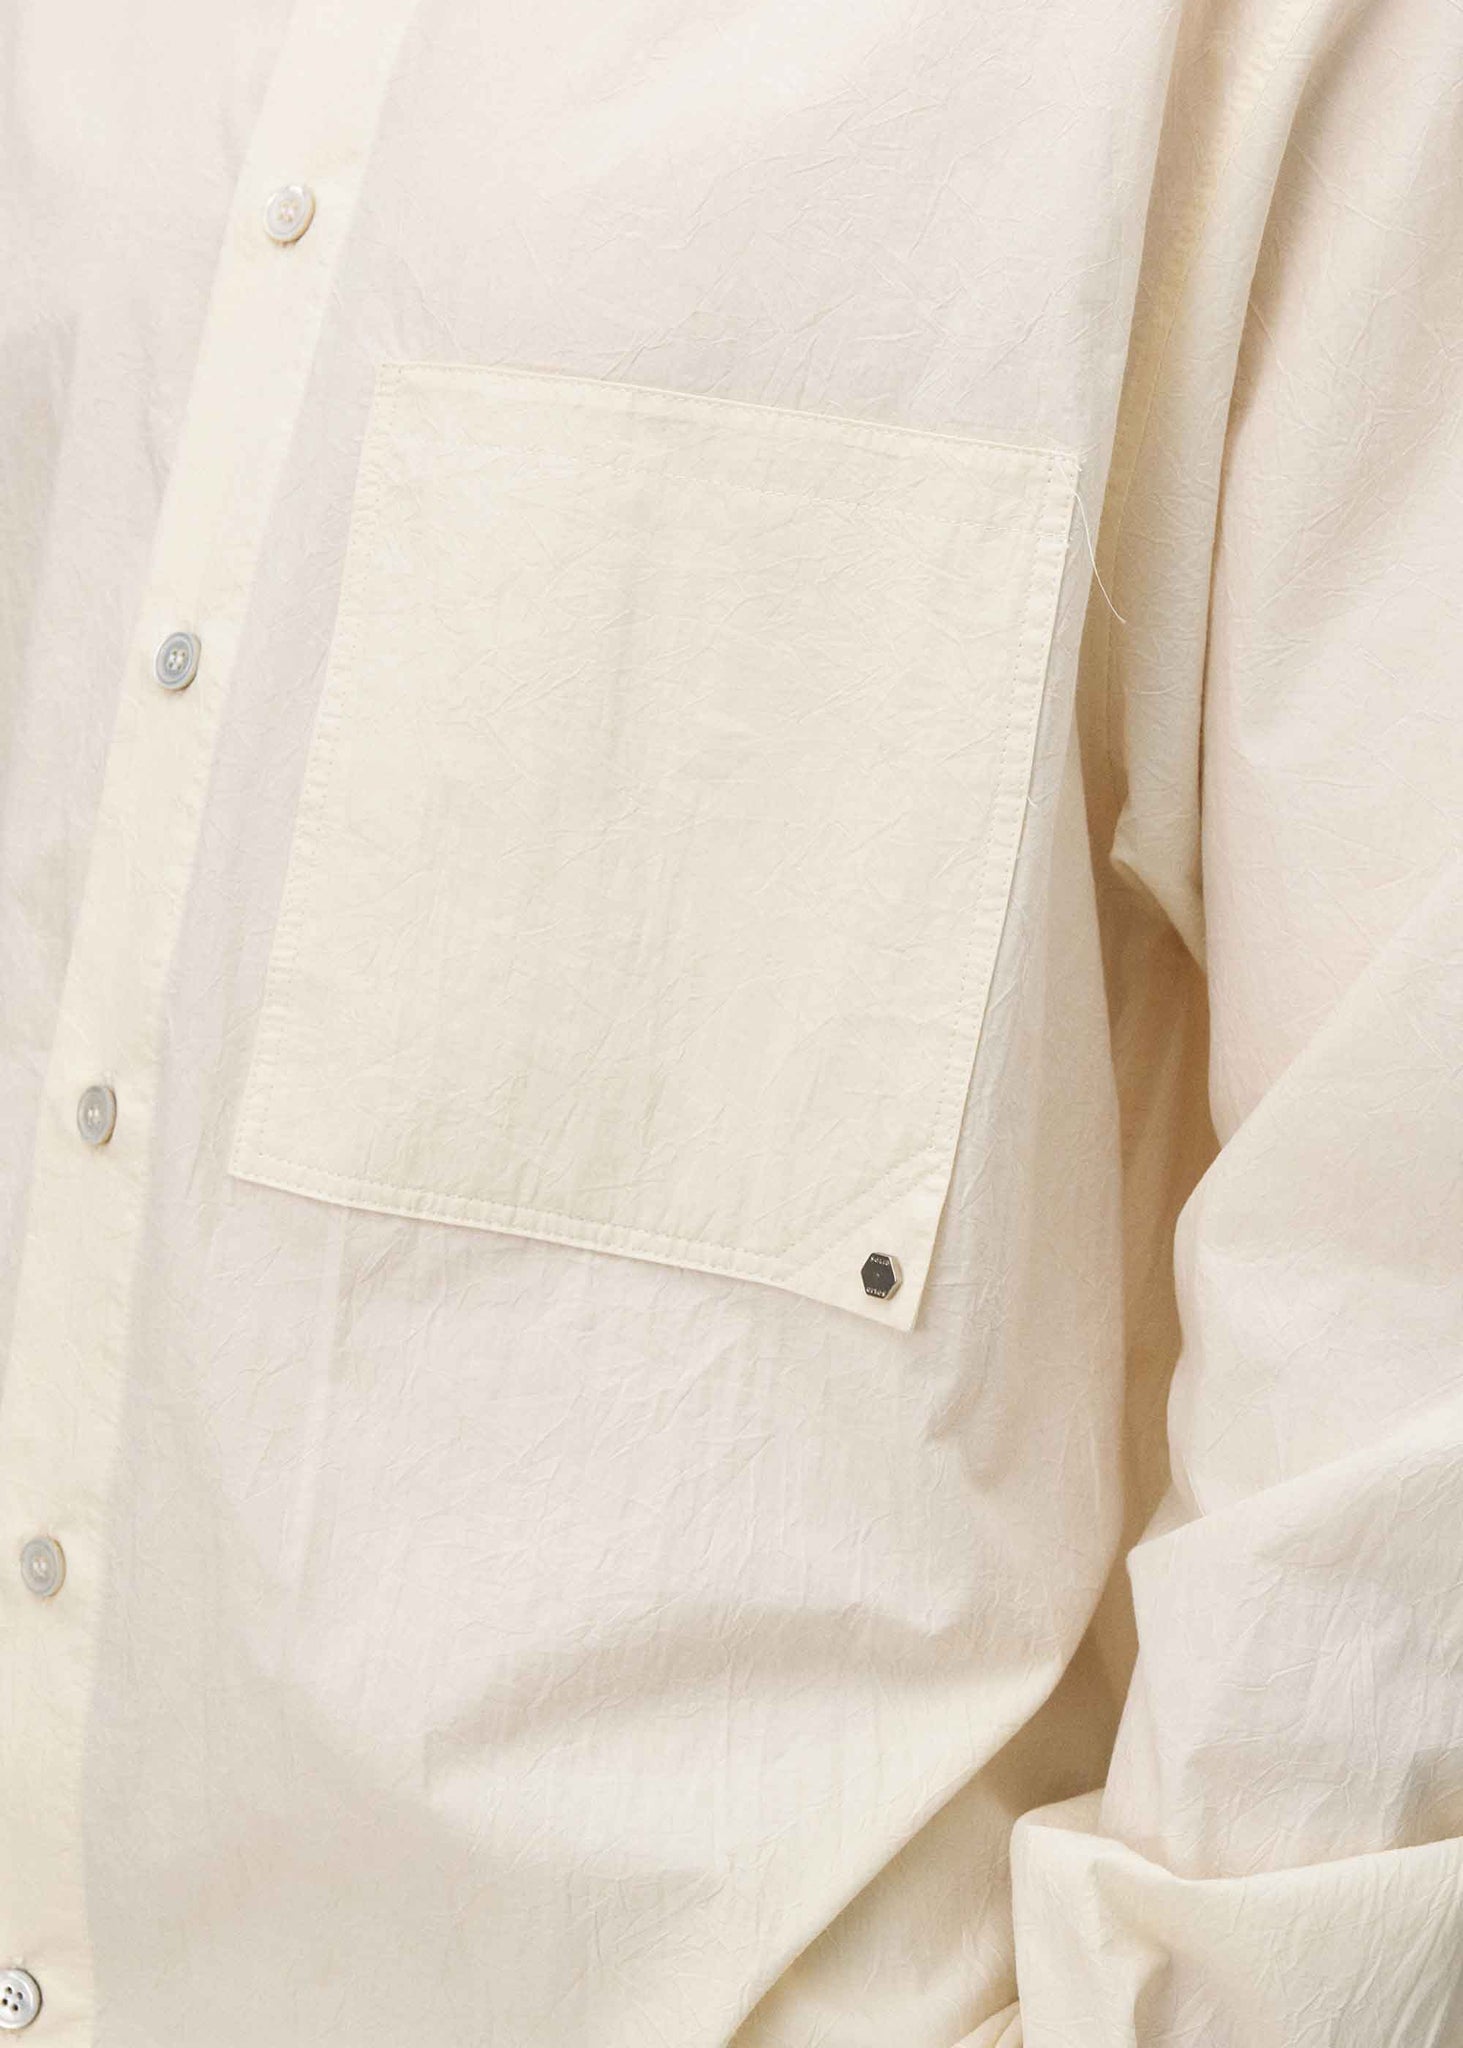 Beige Button-Up Shirt